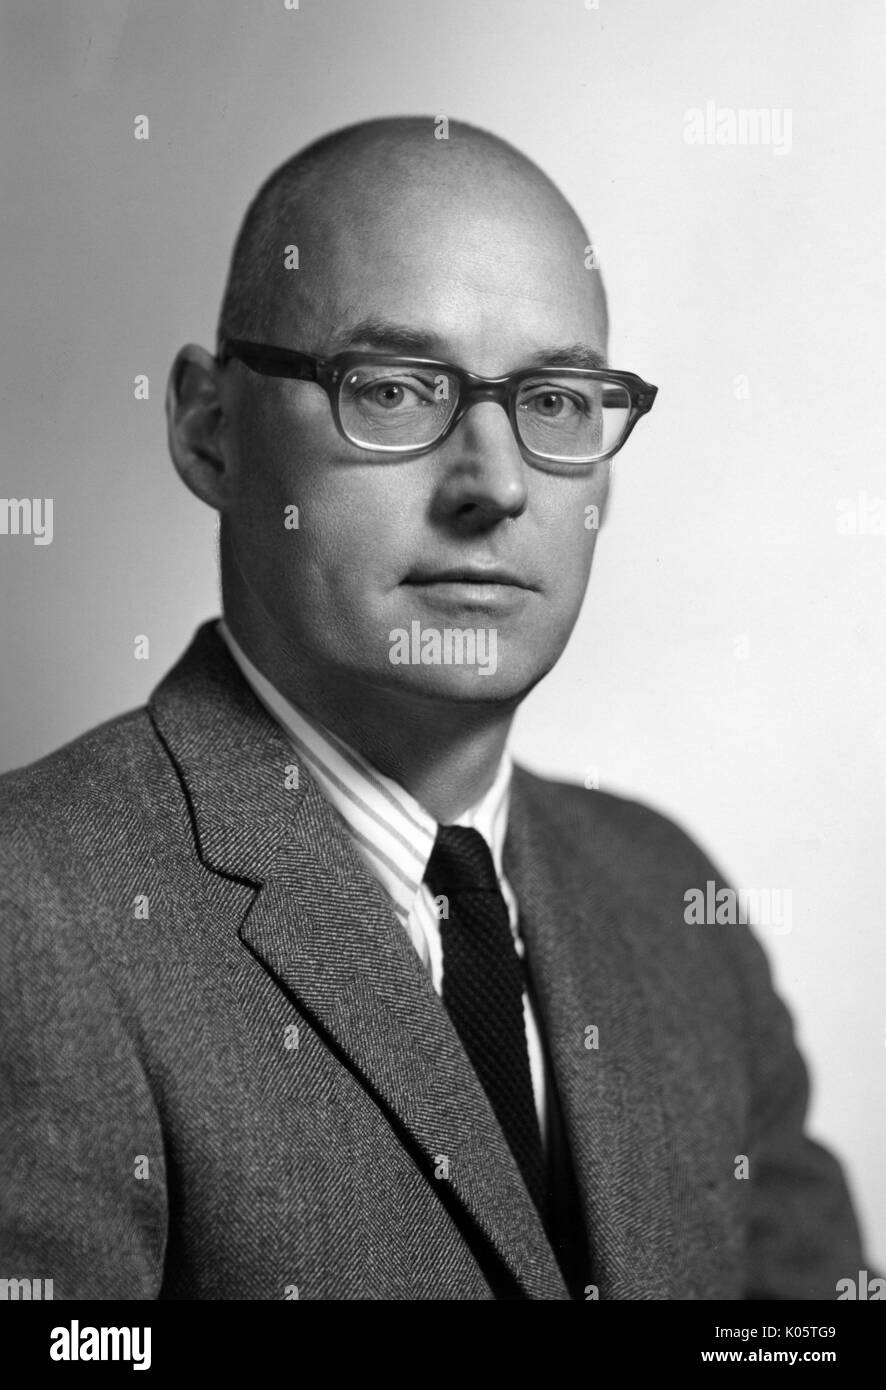 Brustbild der amerikanische Historiker der Wissenschaft Dr. Charles C Gillispie, trug einen dunklen Anzug und einem dunklen Krawatte mit einem gestreiften Hemd, mit einem ernsten Gesichtsausdruck, tragen dunkle Brille, vor einem Hintergrund, 1965 aufgeworfen. Stockfoto